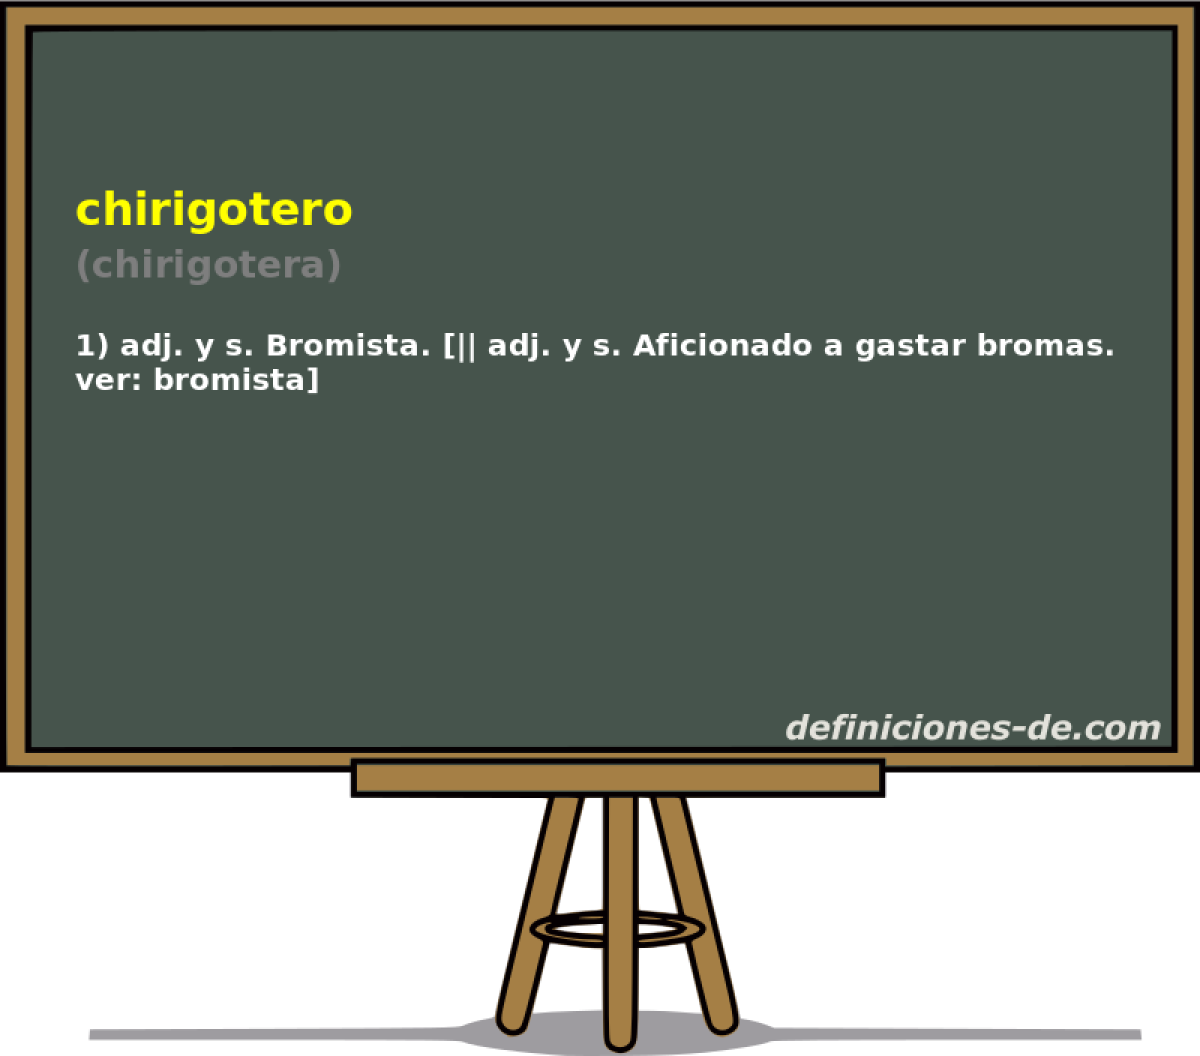 chirigotero (chirigotera)